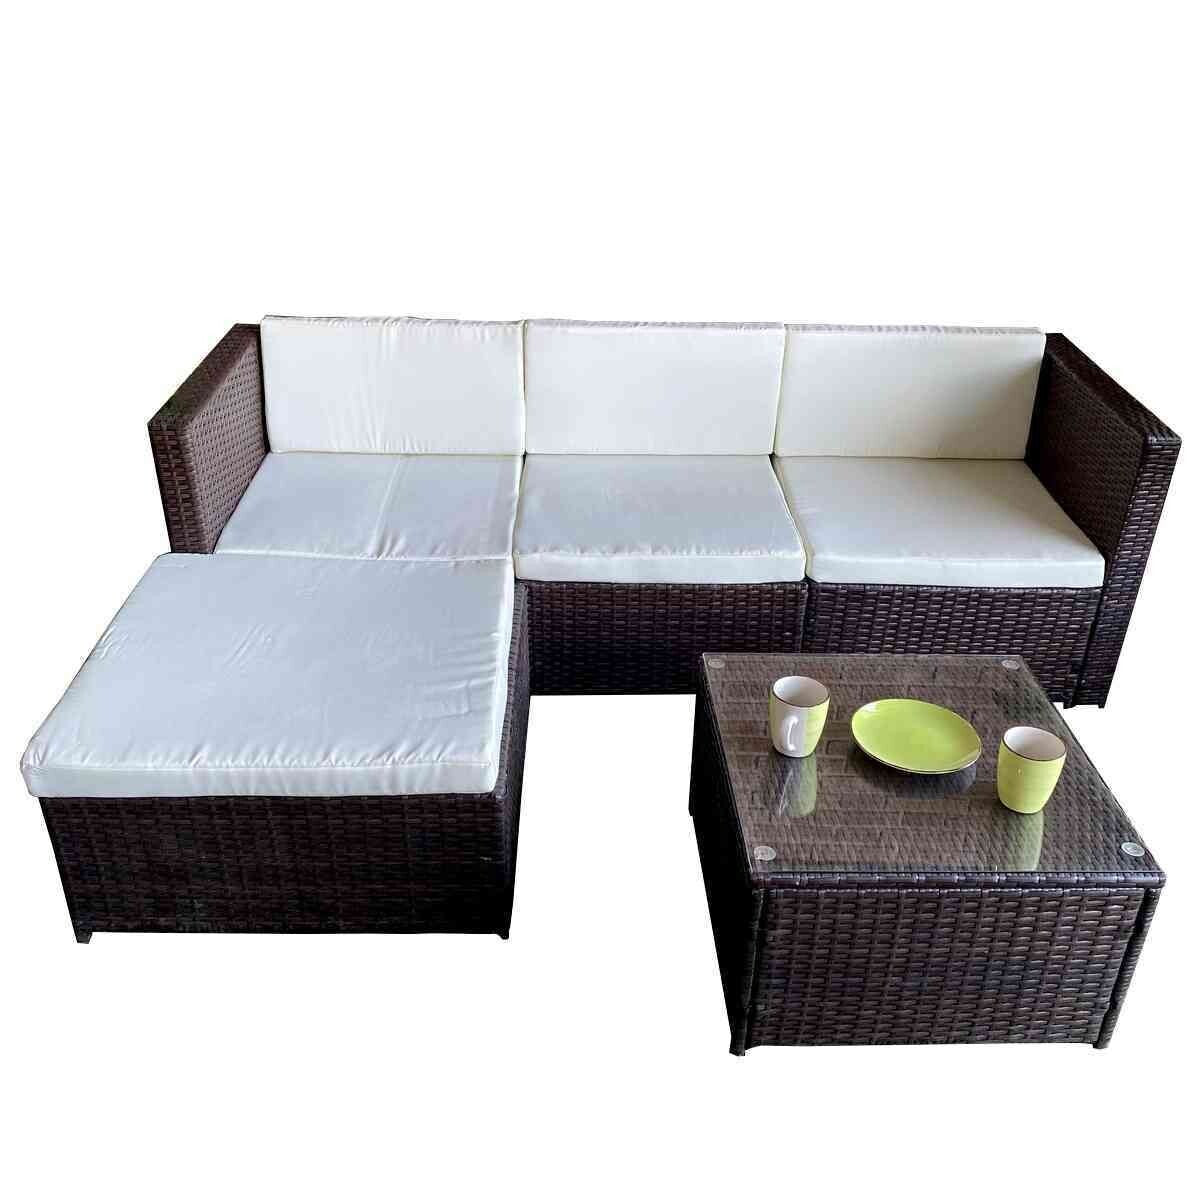 Sofa Chaise Longue de Ratan PE + Mesa. Muebles de Jardin y Terraza